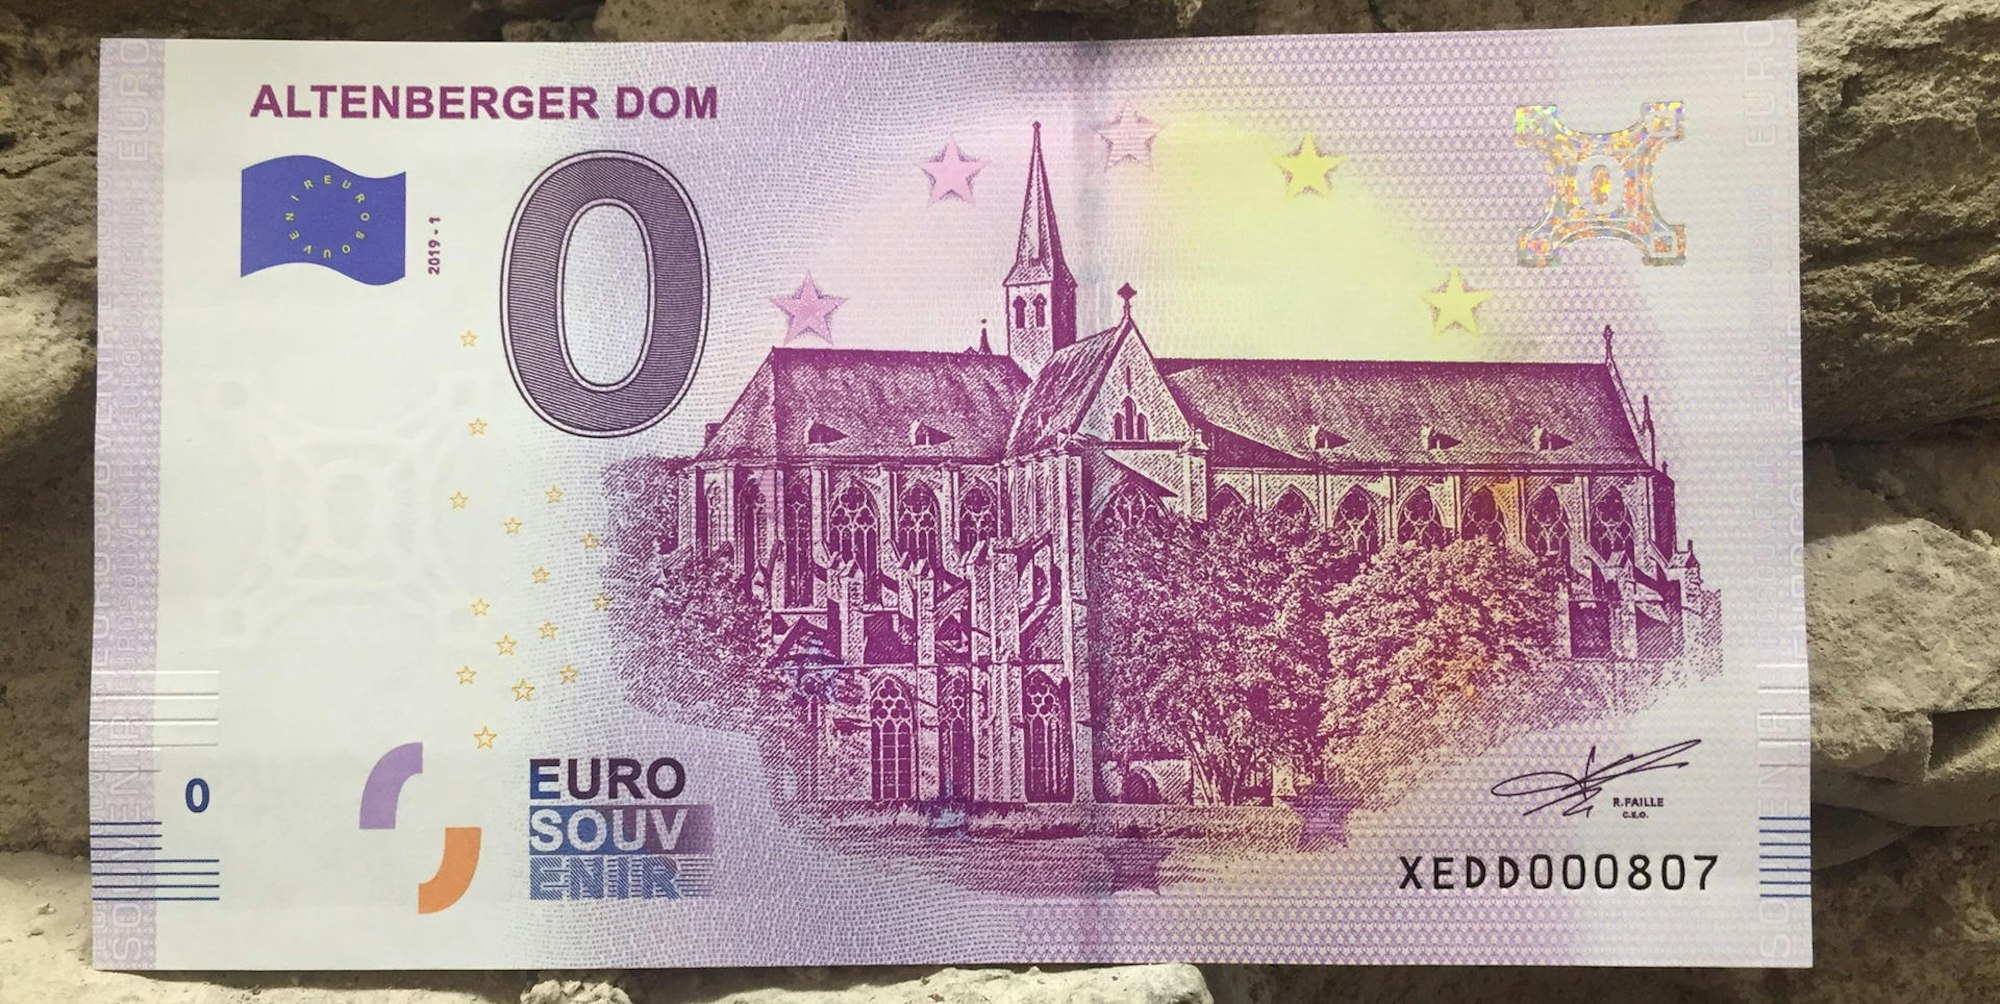 Farblich erinnert der Schein mit dem Altenberger Dom an den 500 Euro Geldschein.